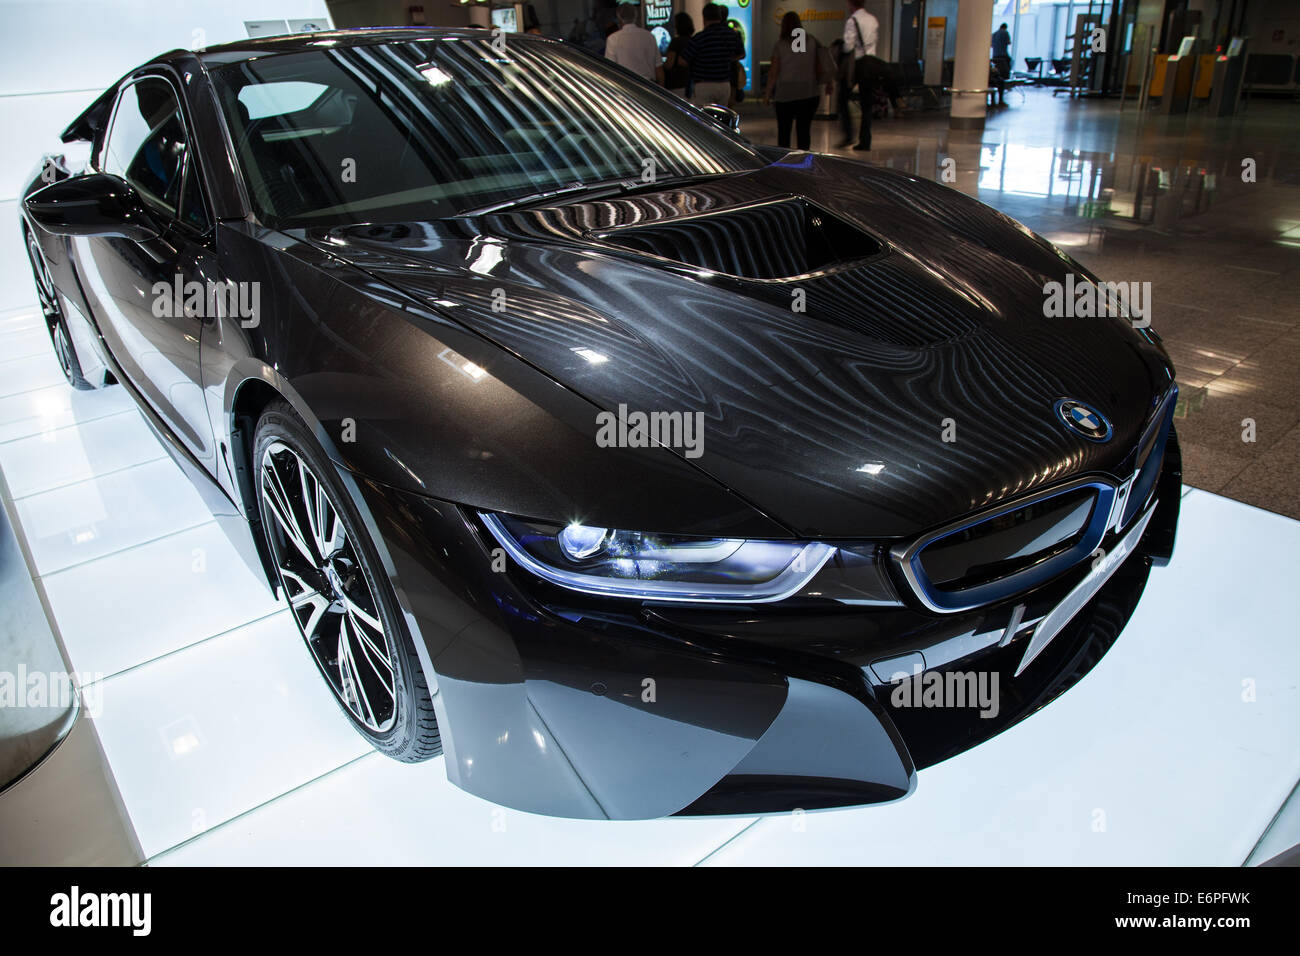 Francfort, Allemagne - le 28 août 2014 : Photo de BMW i8 série noire voiture innovation Banque D'Images